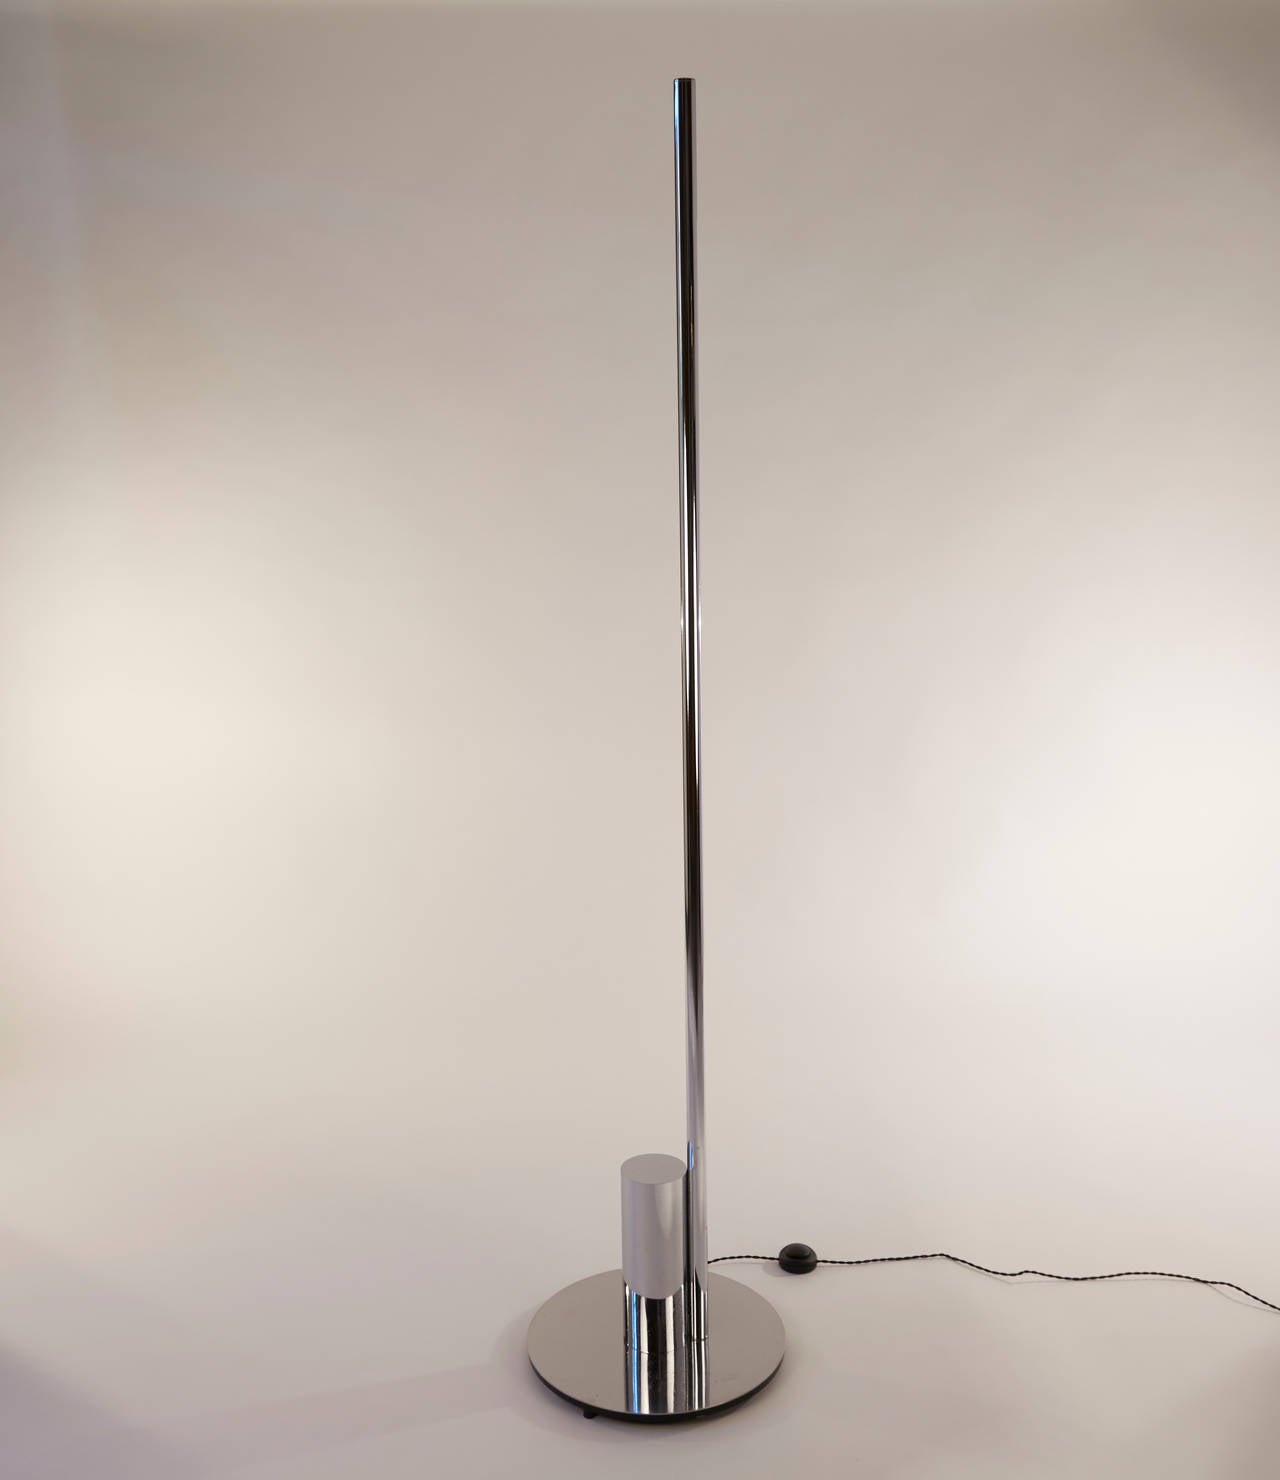 Elegant Linea line floor lamp by Nanda Vigo designed for Arredoluce.